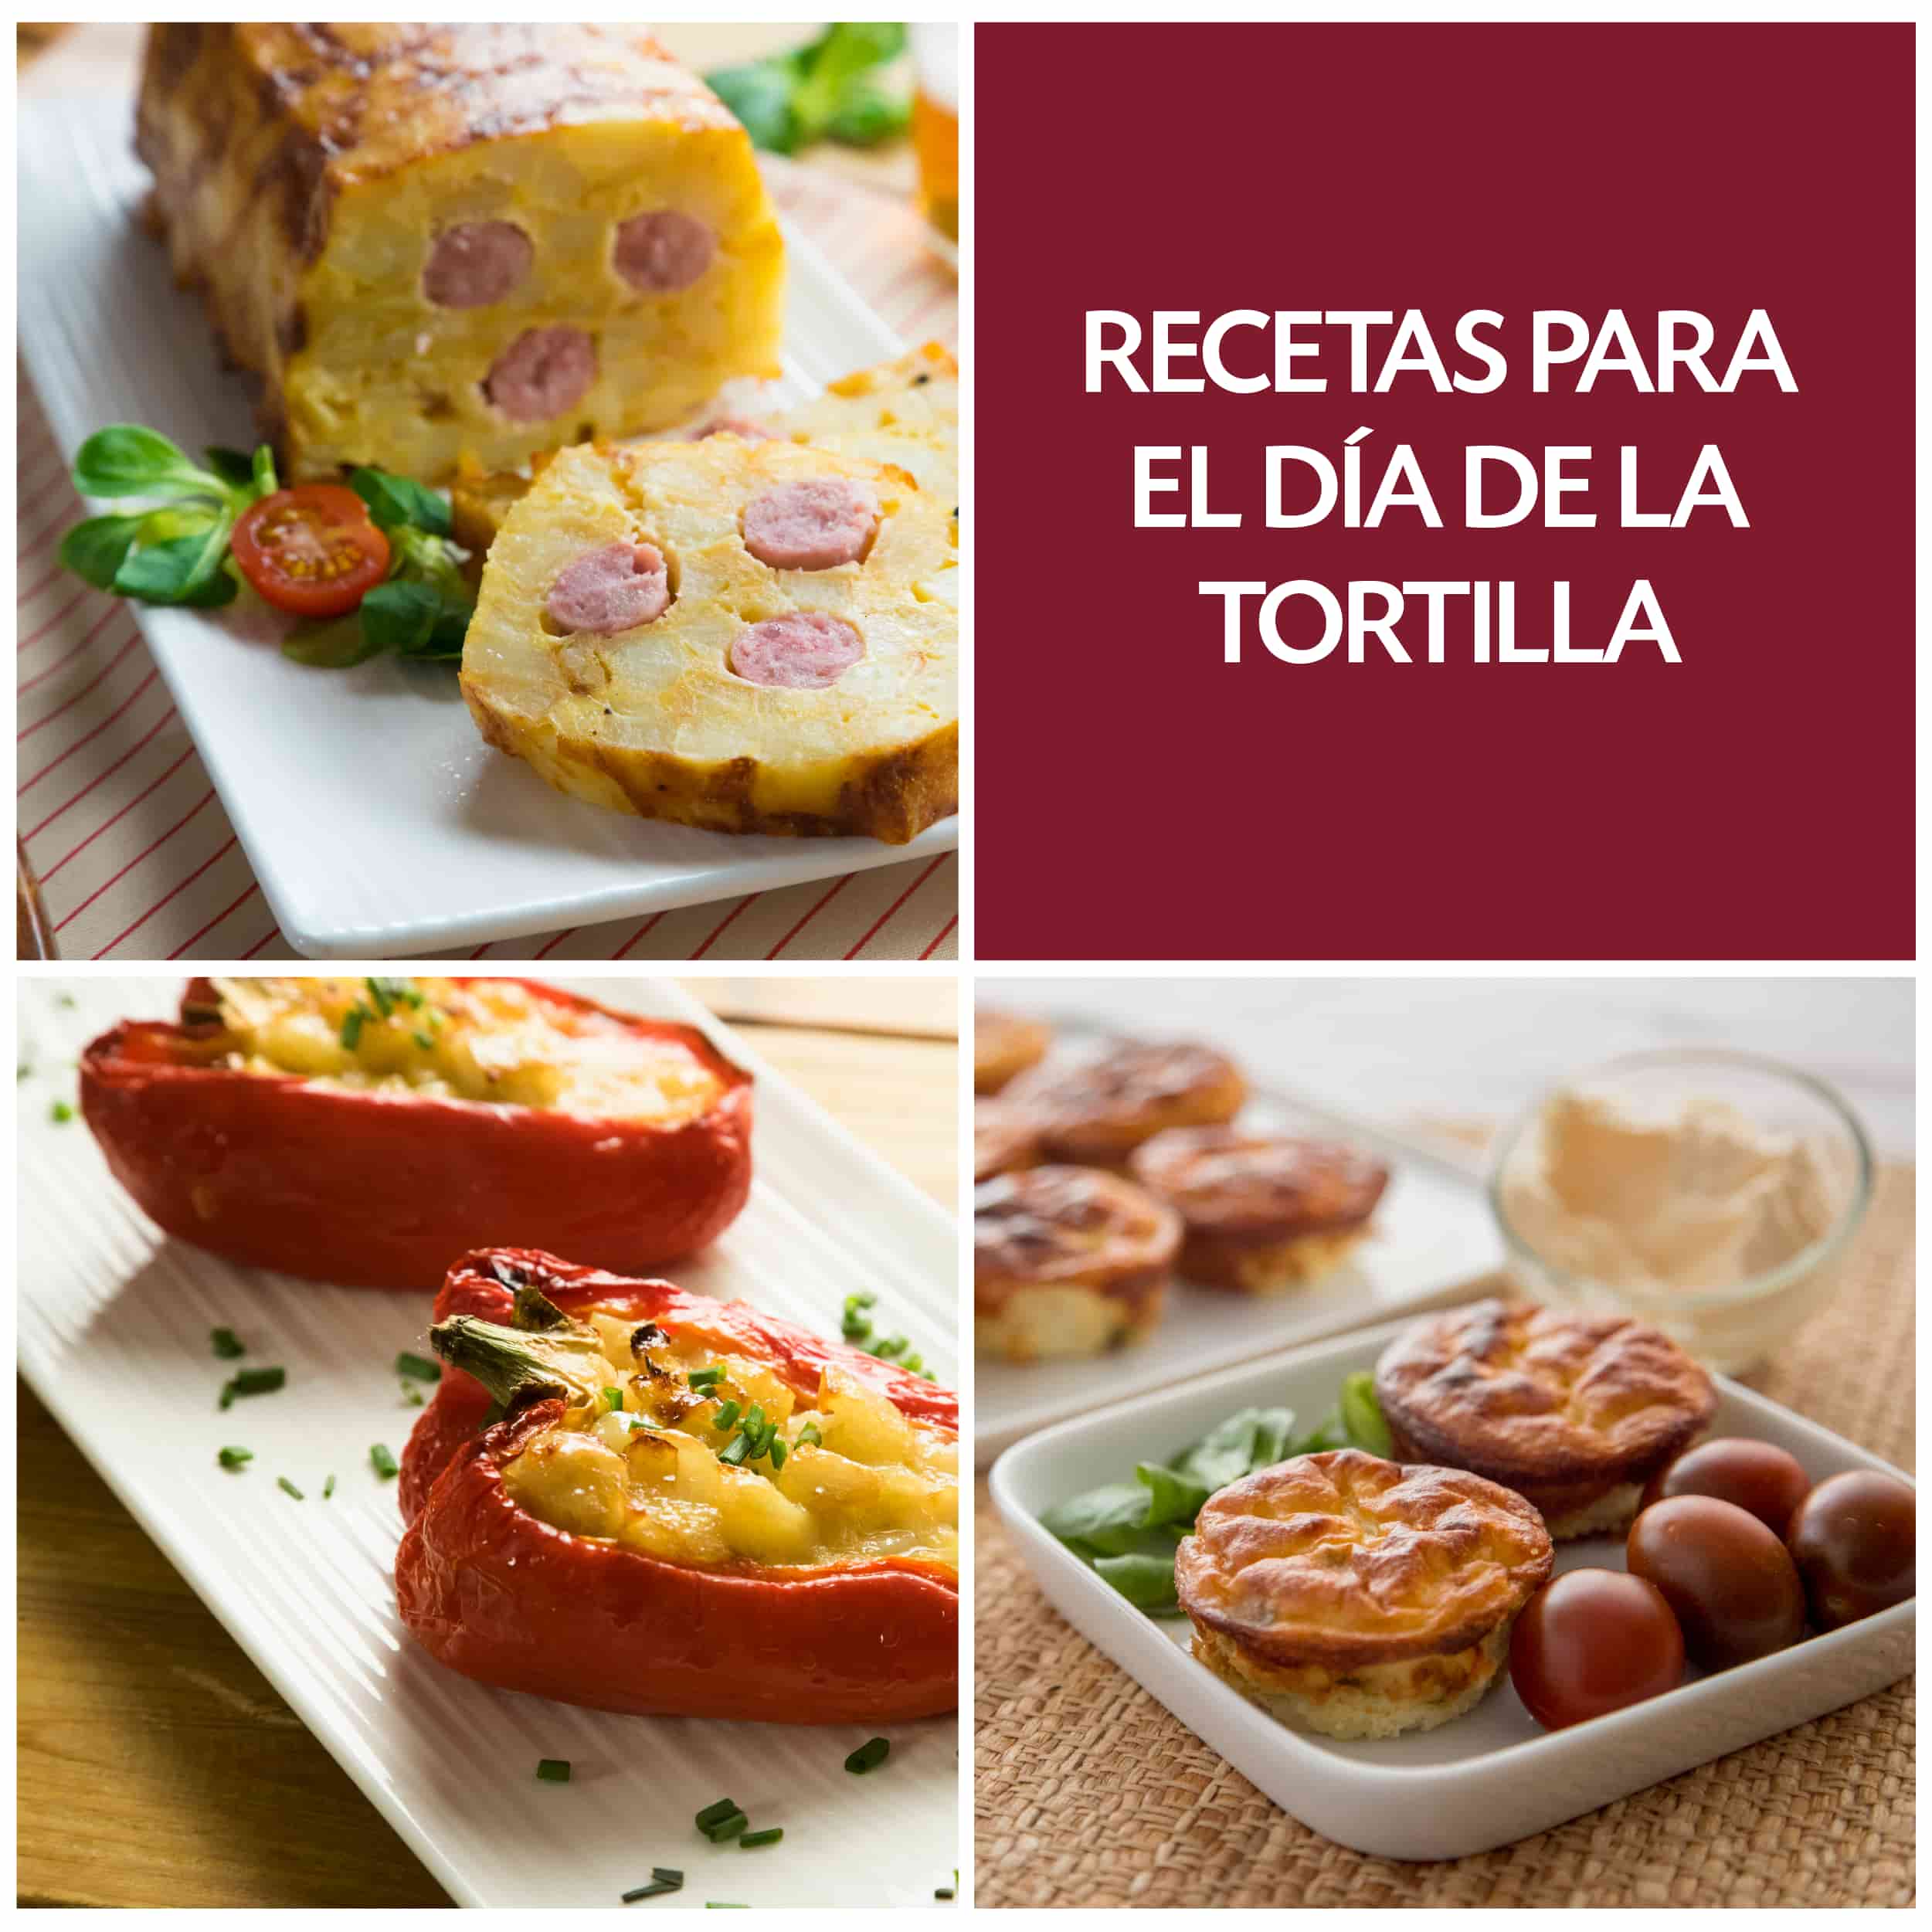 8 increíbles recetas para celebrar el Día de la tortilla